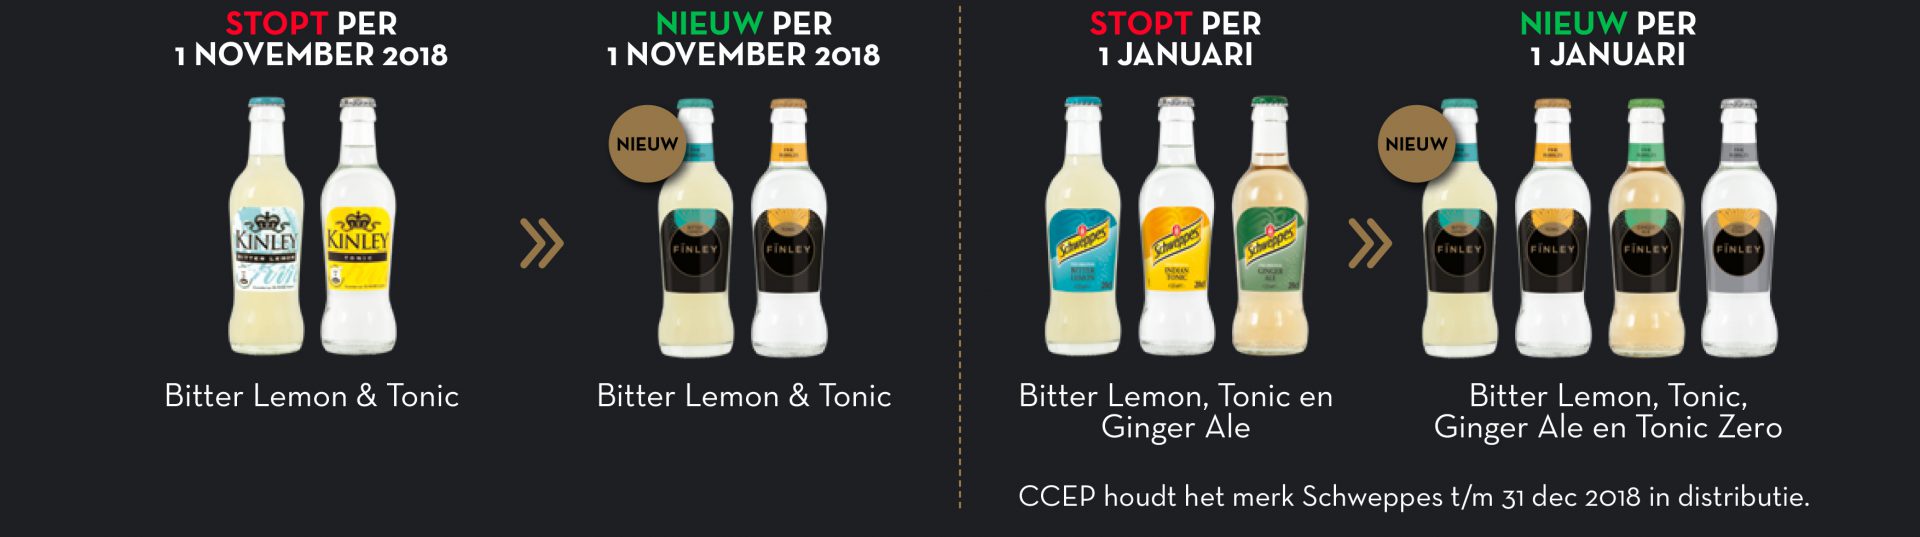 Nieuwsbrief-Nectar-Utrecht-Coca-Cola-Finley-Bitter-Lemon-Tonic-wijzigingen